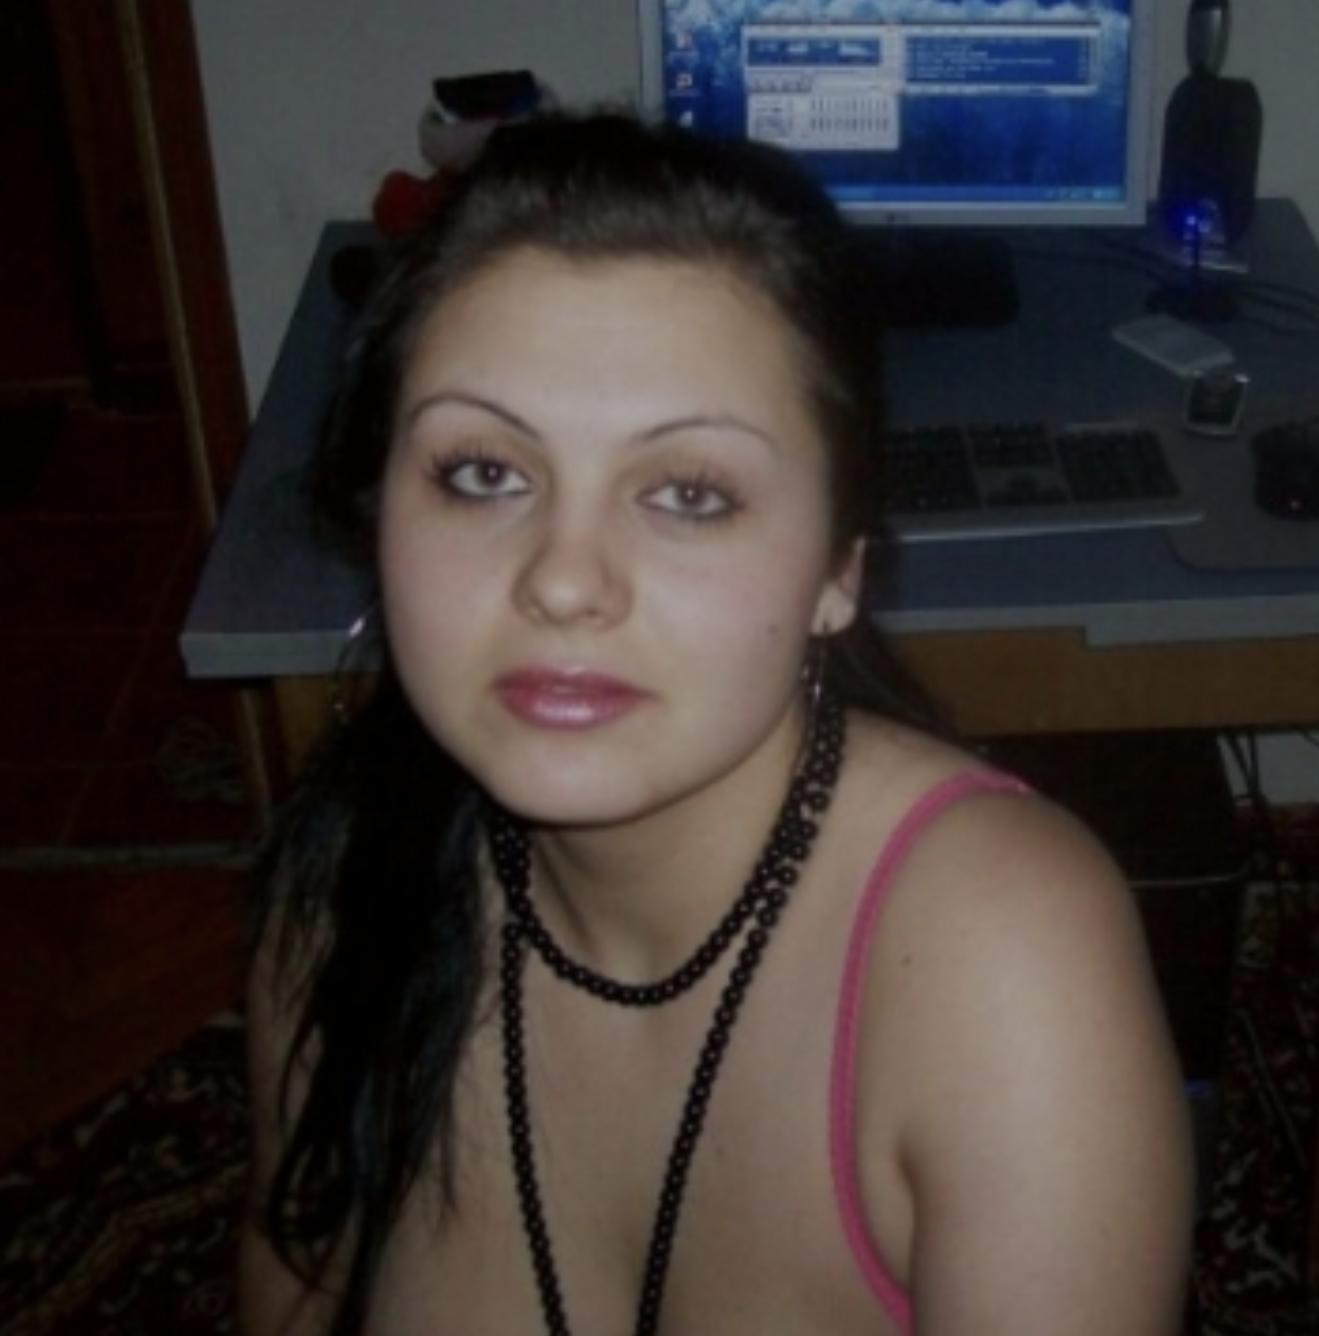 Проститутка Natali, фото 1, тел: 0987500390. Goloseevsky area - Киев